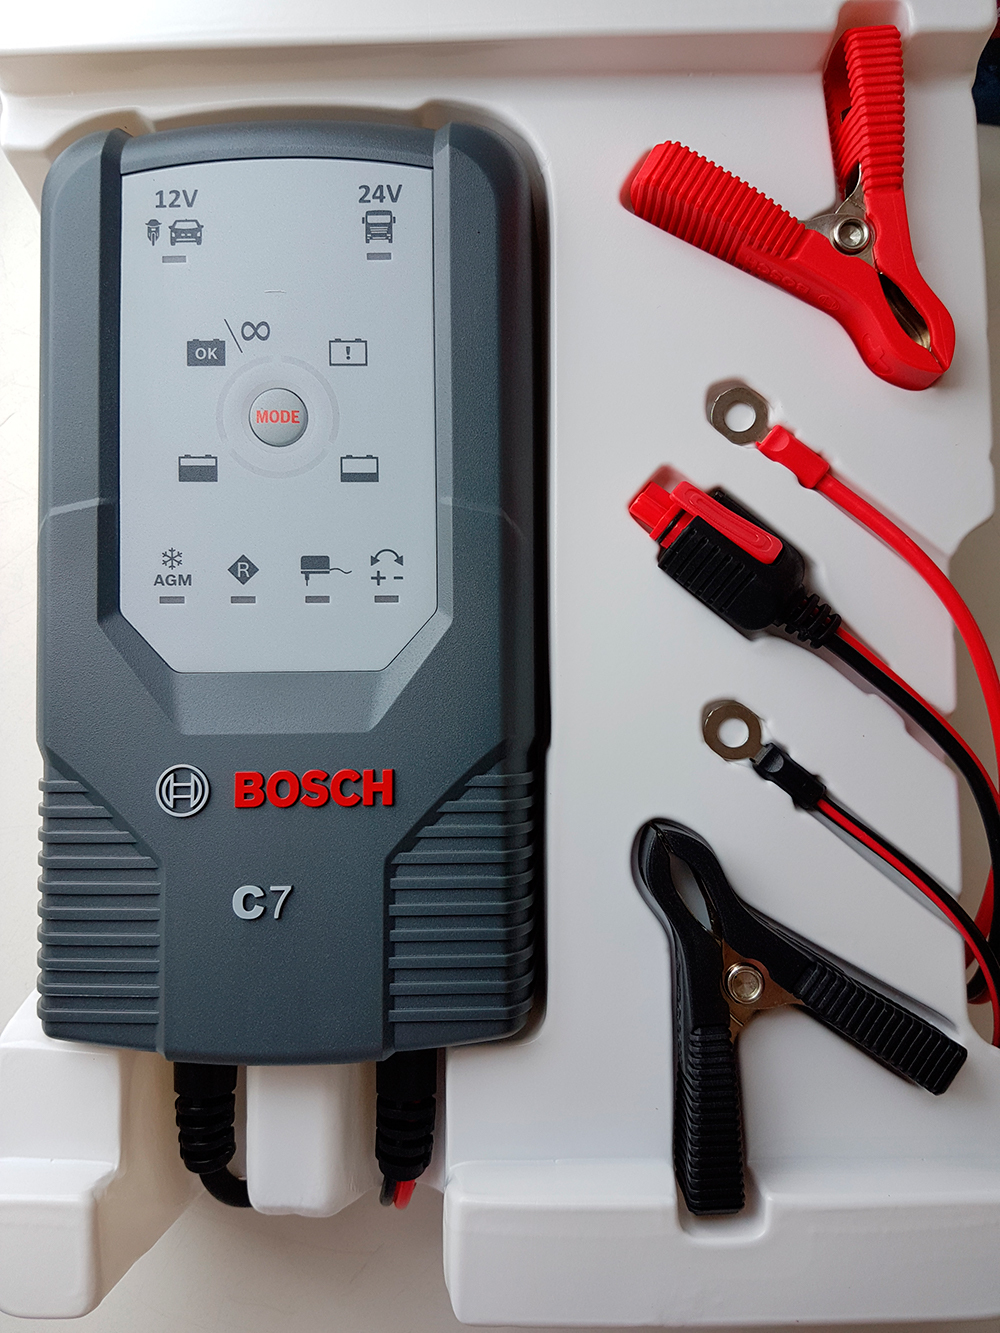 Купить пуско зарядное устройство Bosch c7 в Москве - цены на пуско-зарядное  устройство Bosch c7 в интернет магазине J-Starter